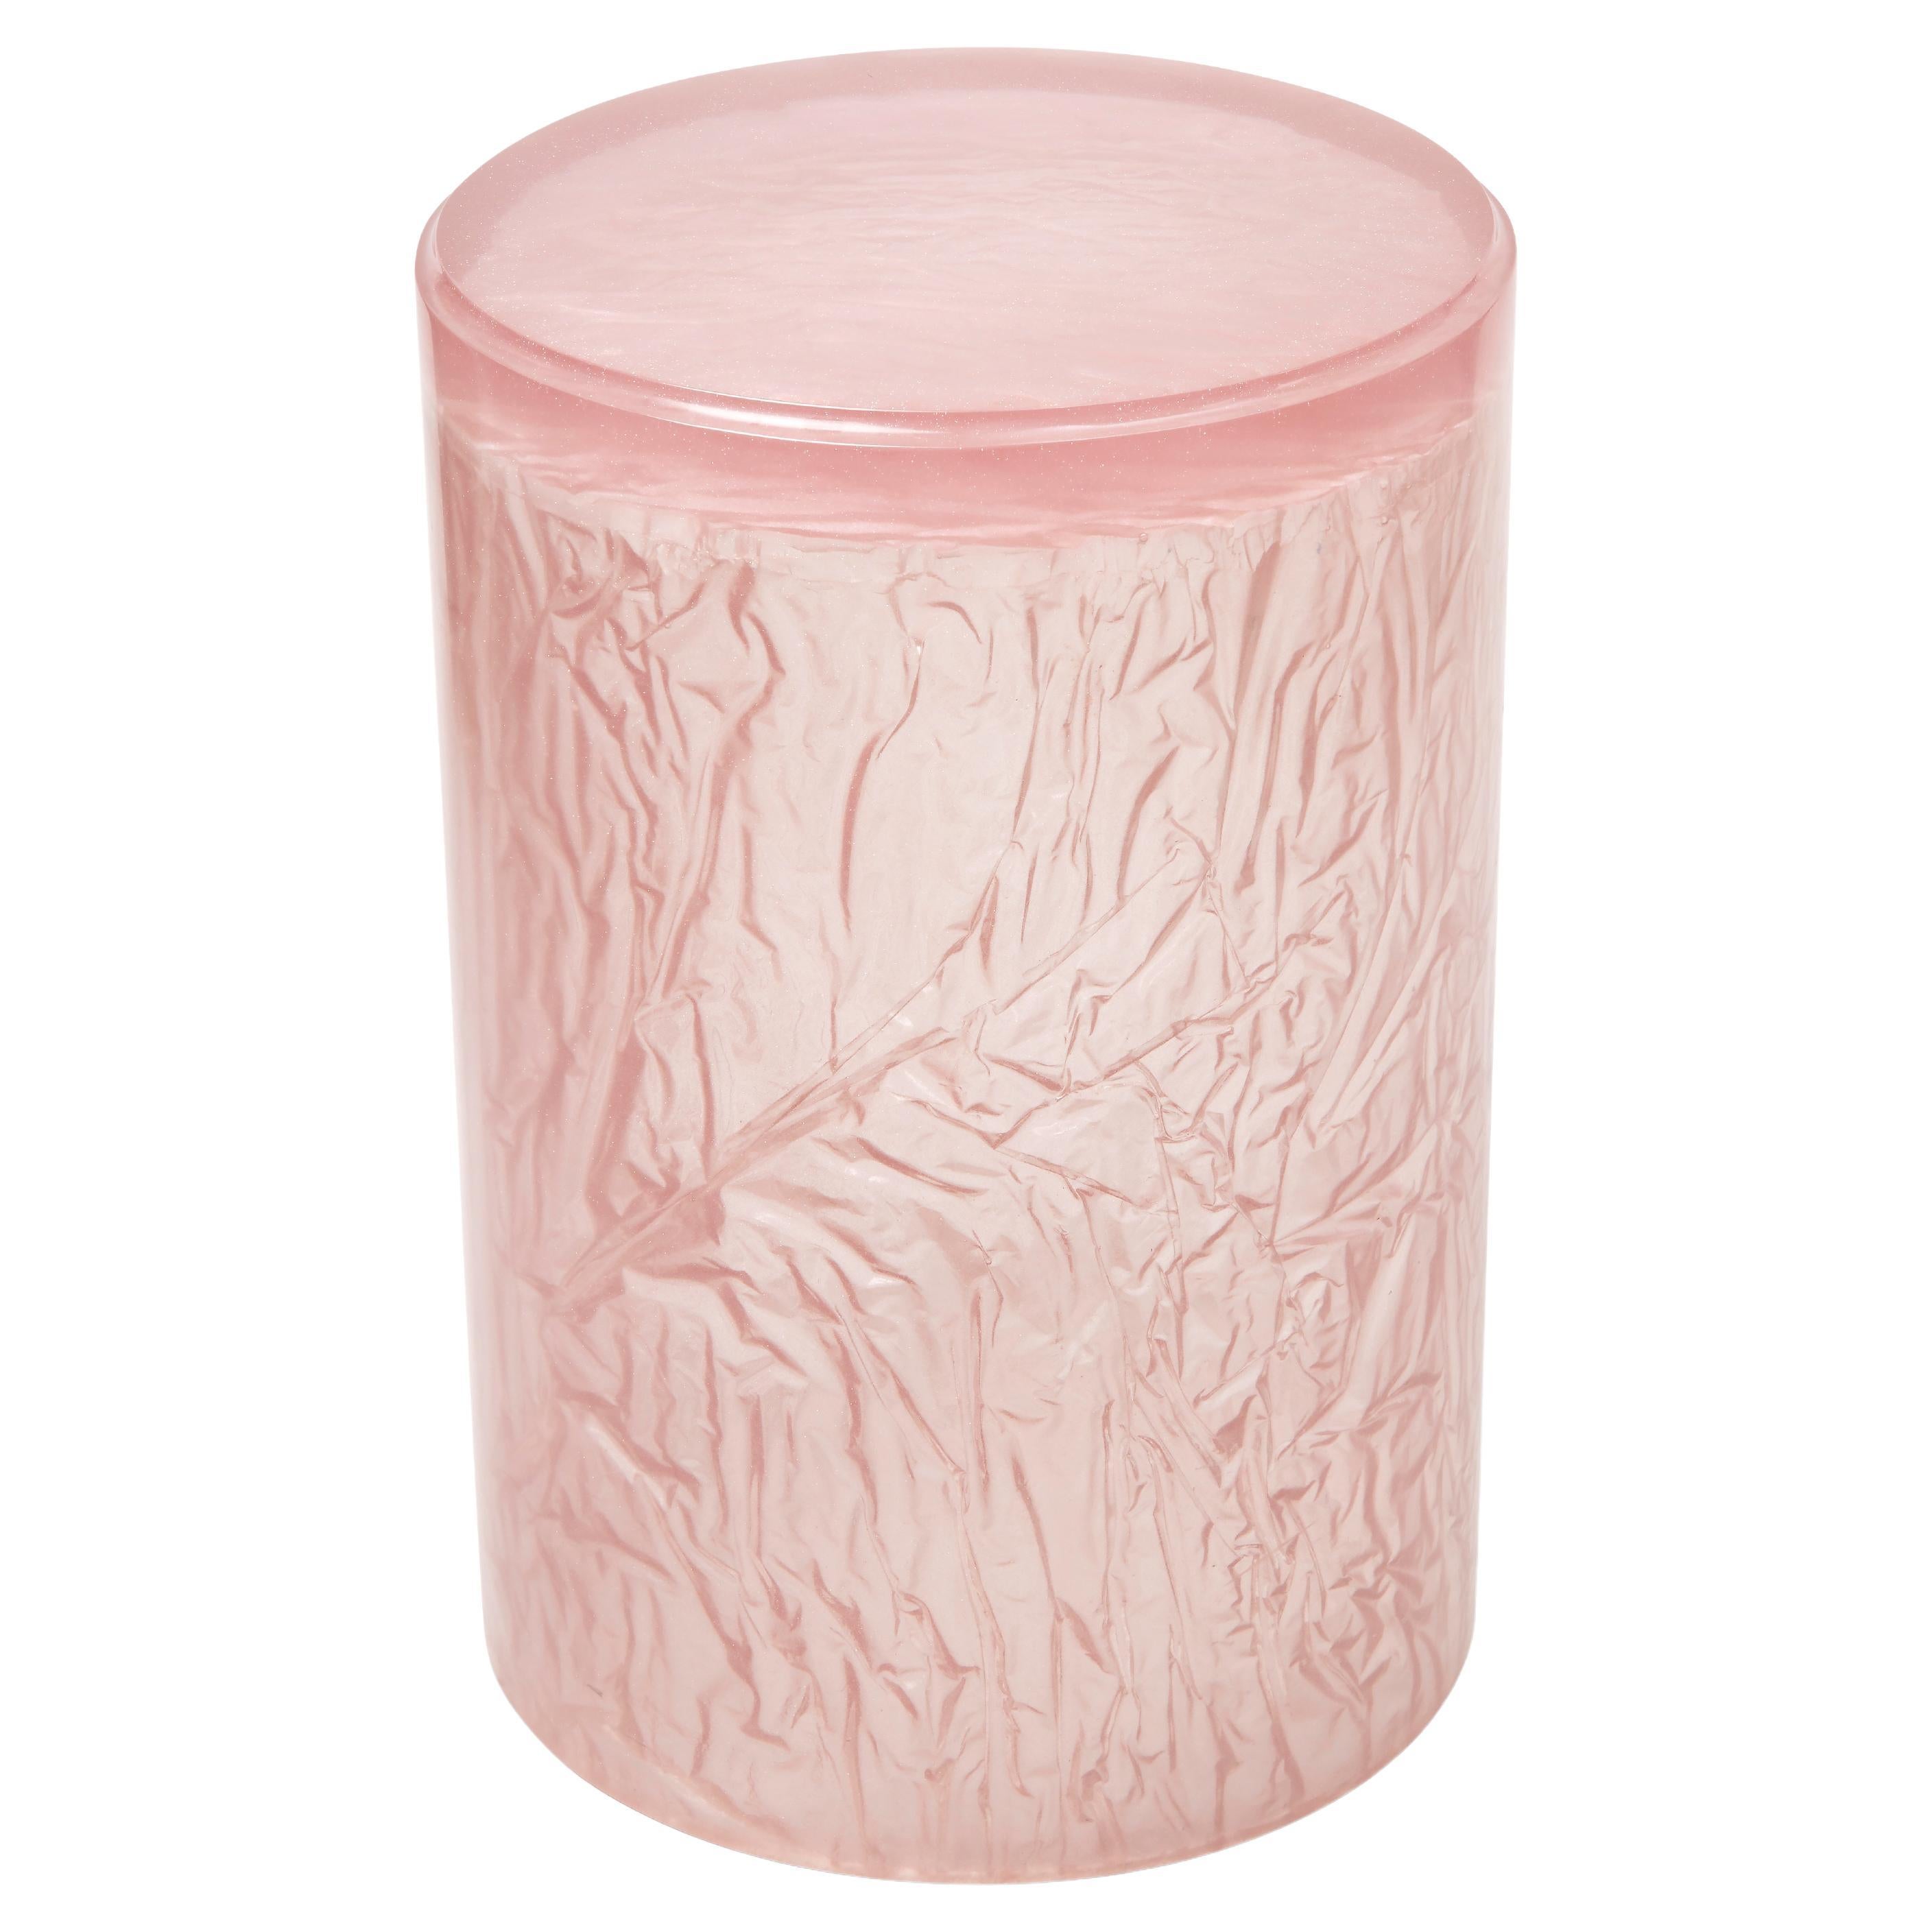 Zeitgenössischer Beistelltisch oder Hocker aus Harz-Acryl von Natalie Tredgett, glänzend, rosa